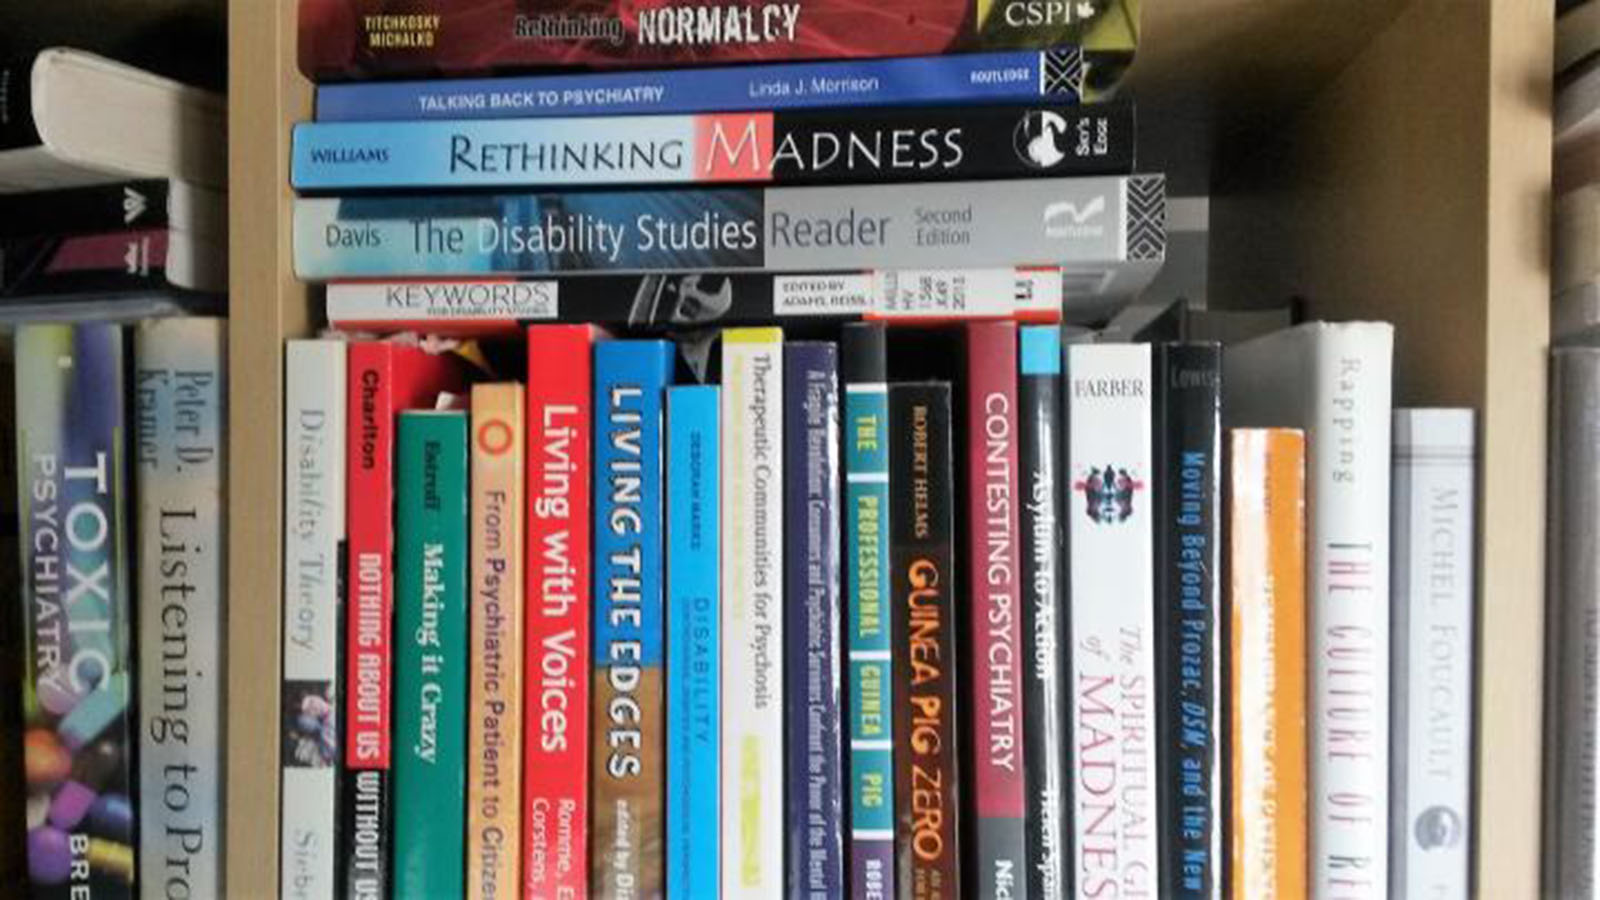 books on a shelf